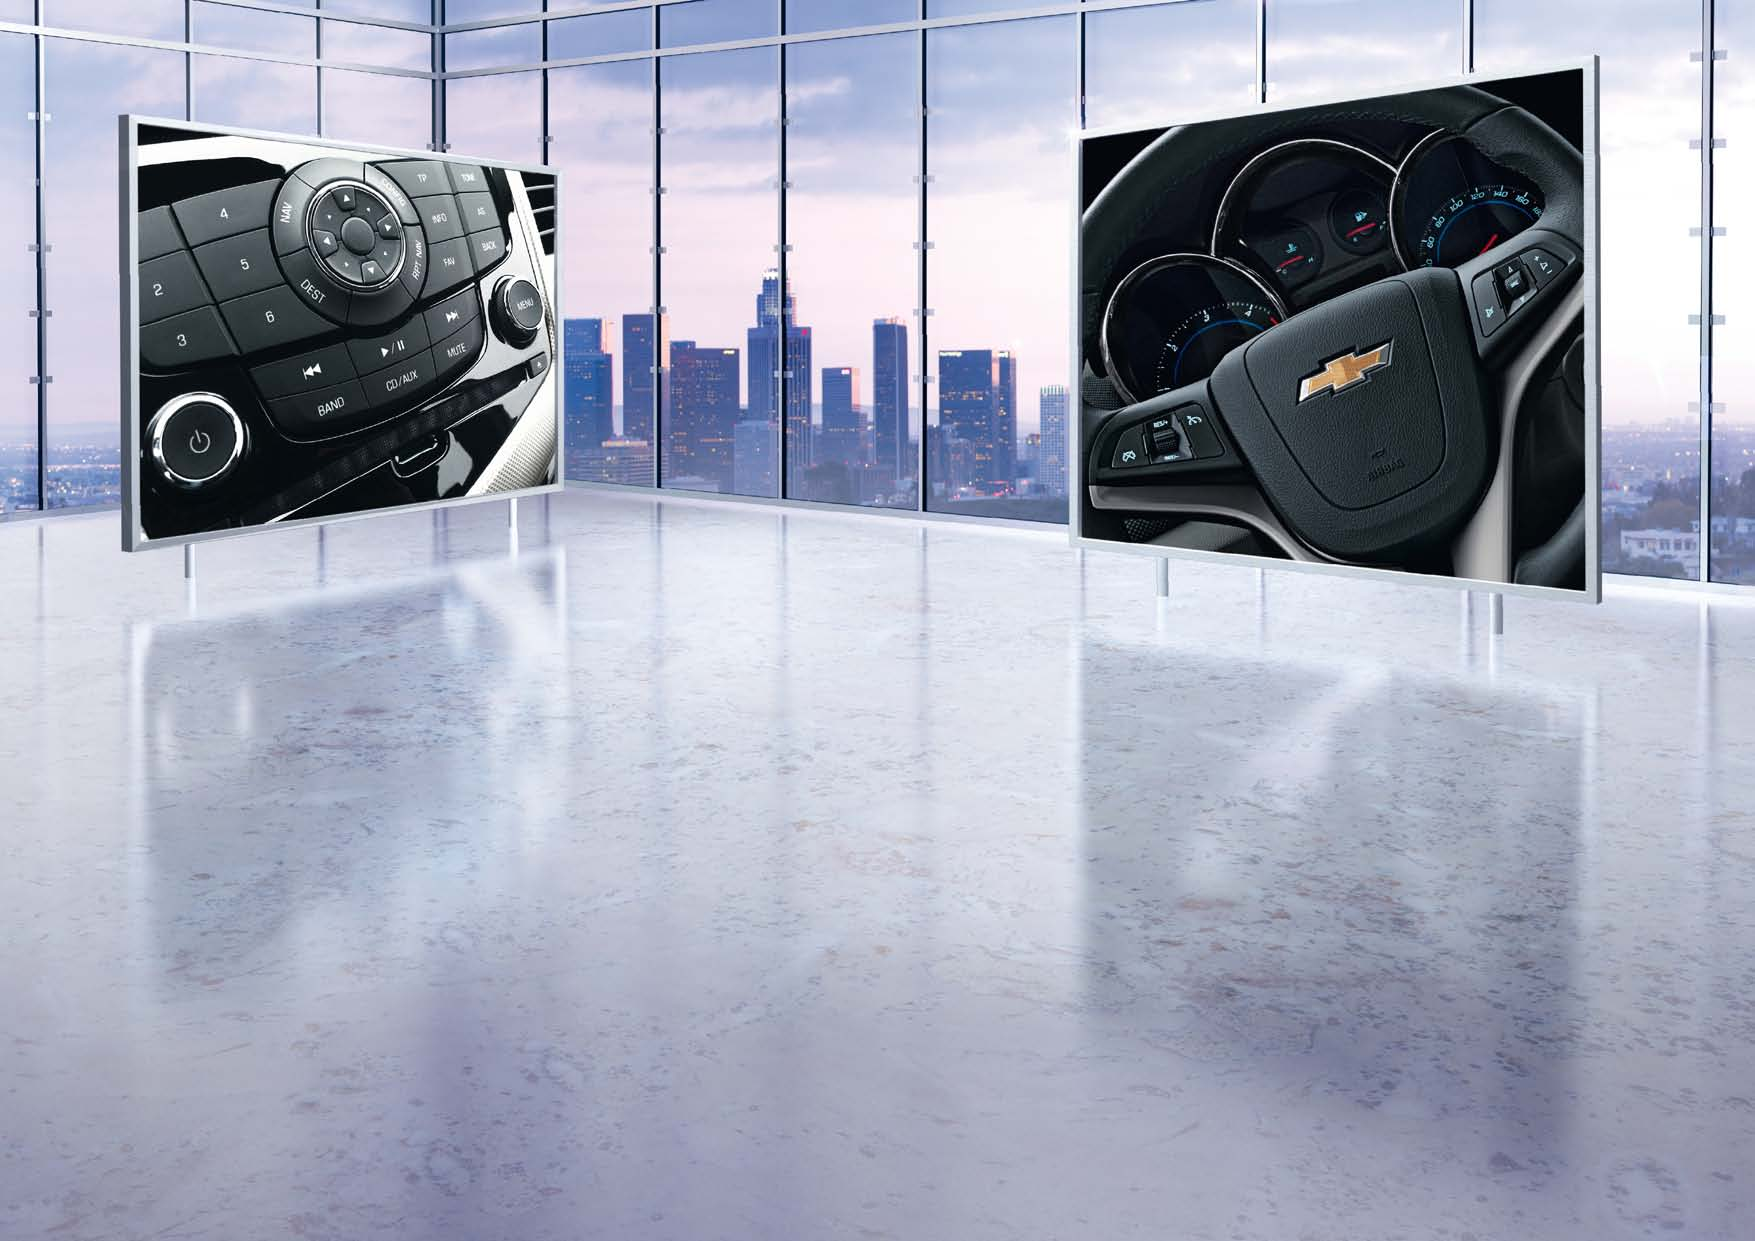 BELLEZA INTERIOR Déjate impresionar por su interior. El diseño de doble cabina de su habitáculo inspirada en los legendarios Corvette y su completa y elegante consola central te sorprenderán.